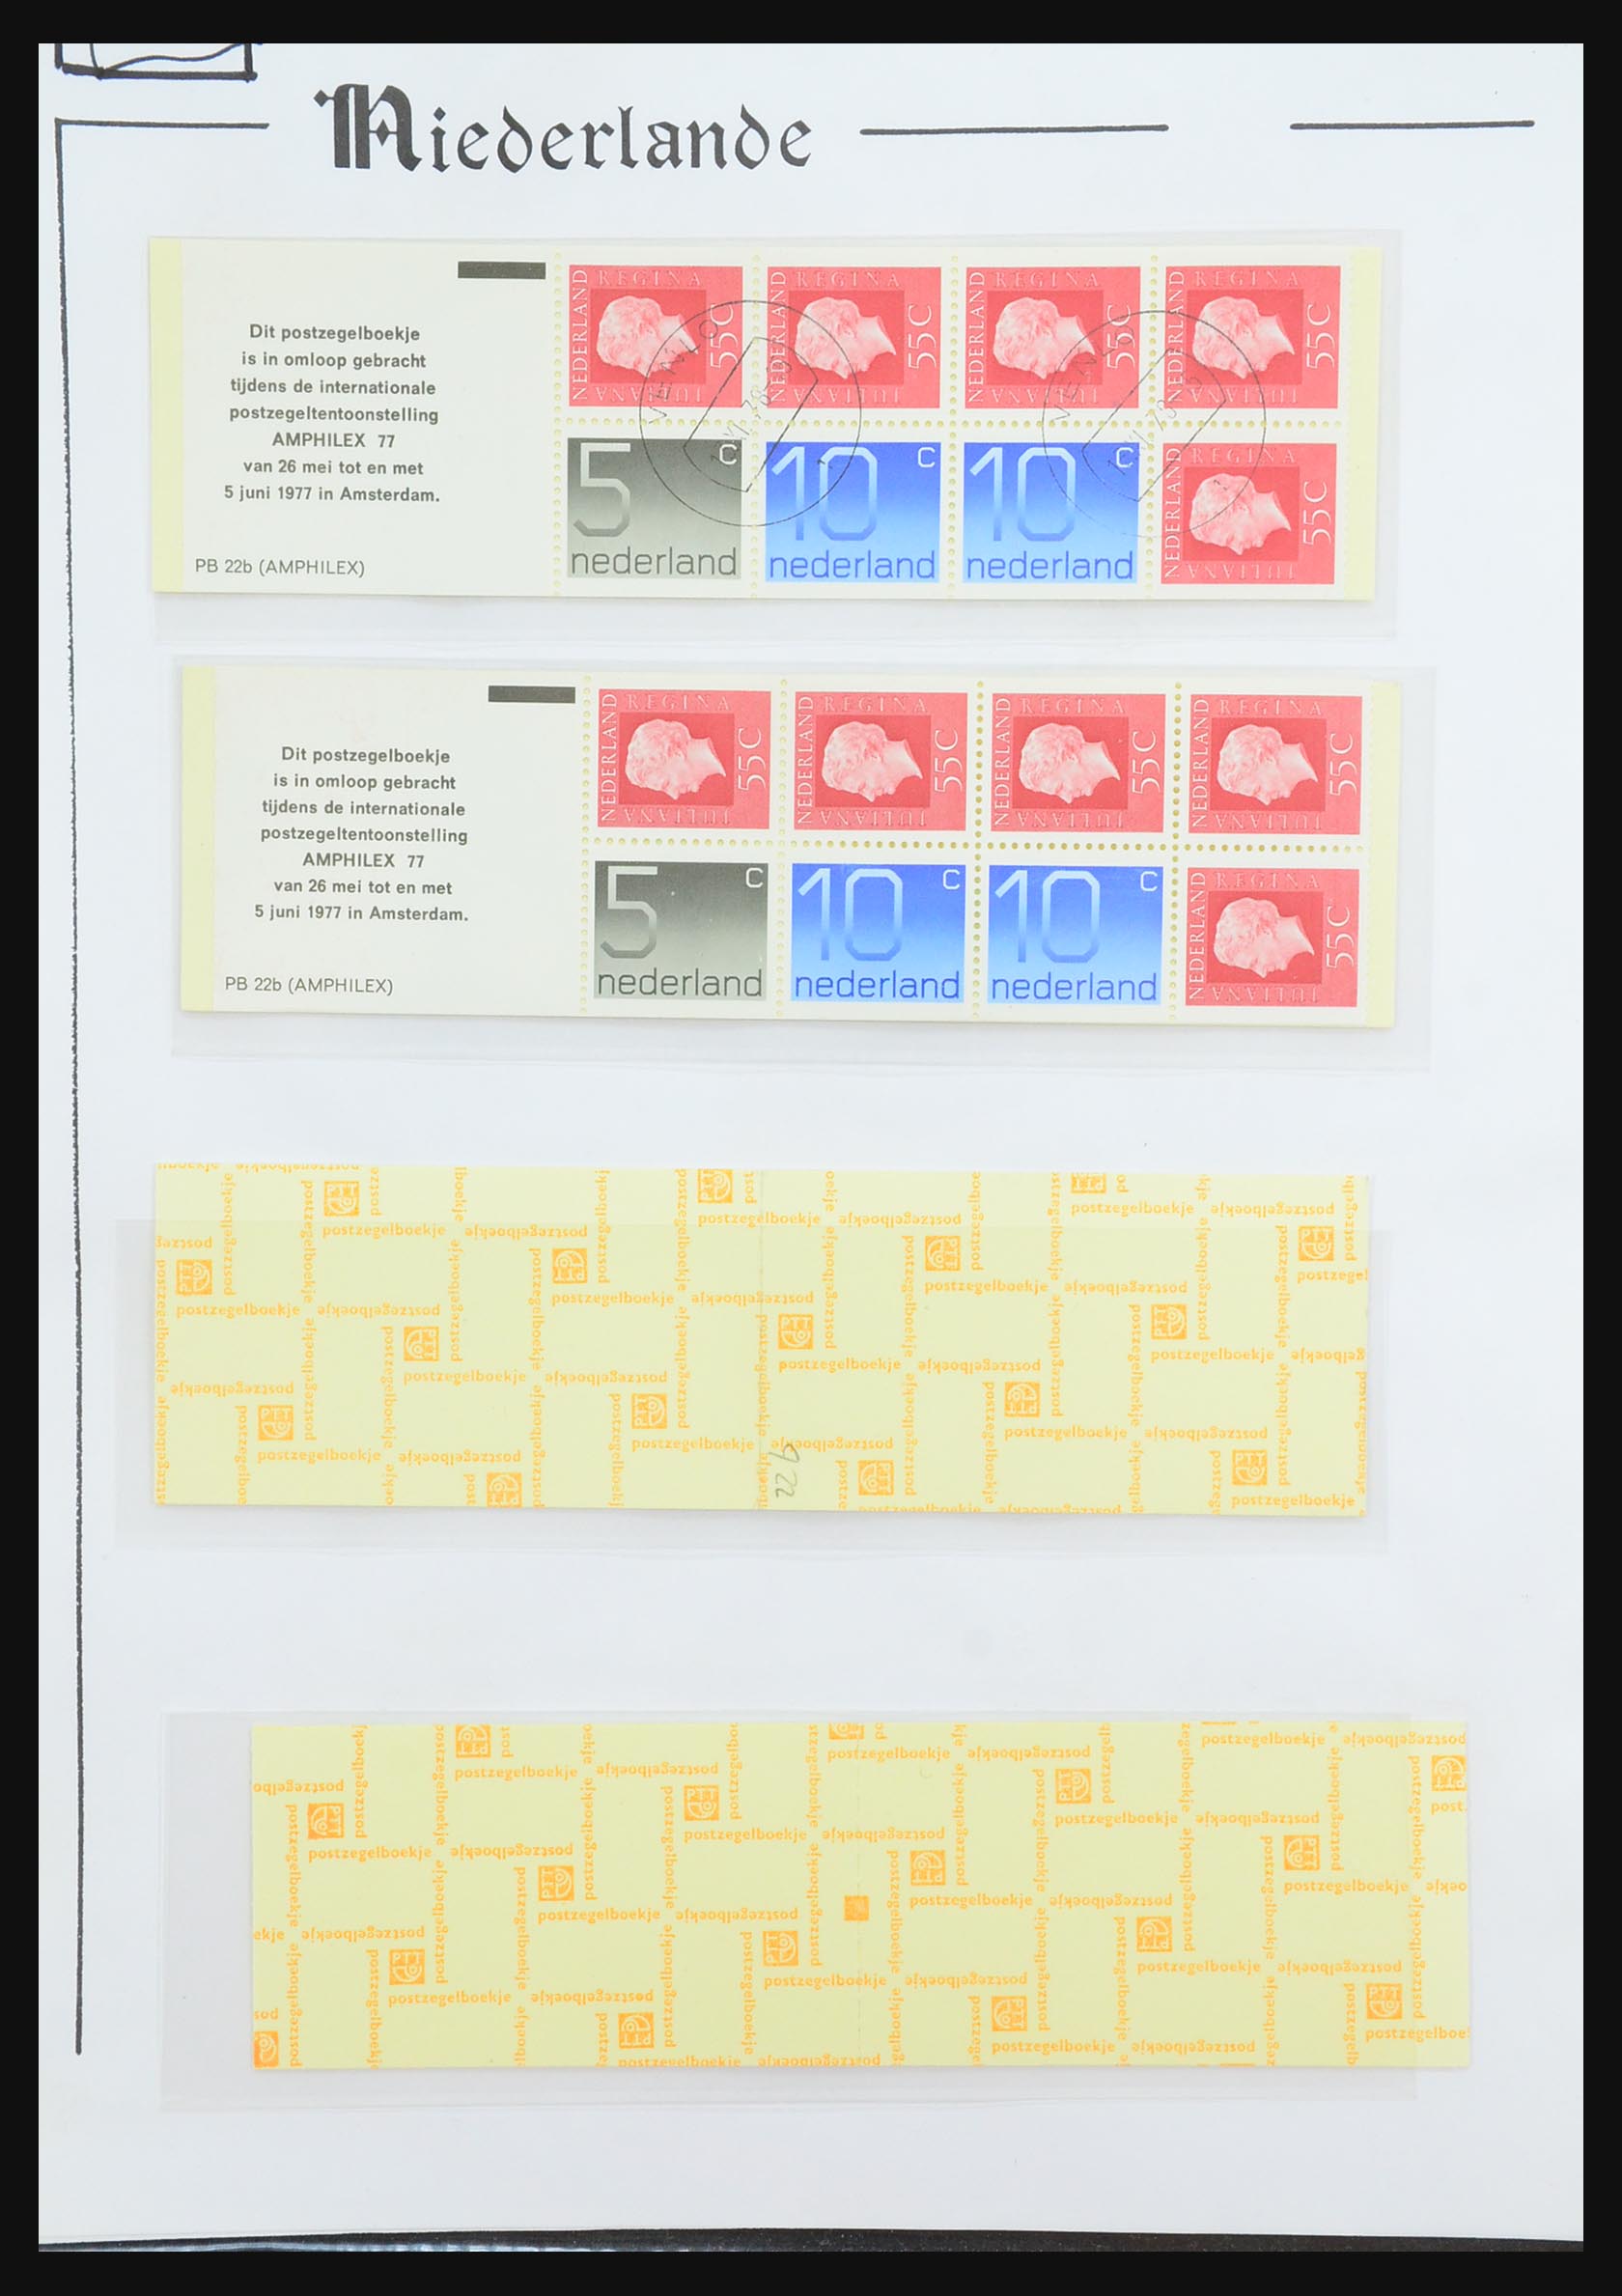 31311 072 - 31311 Netherlands stamp booklets 1964-1994.